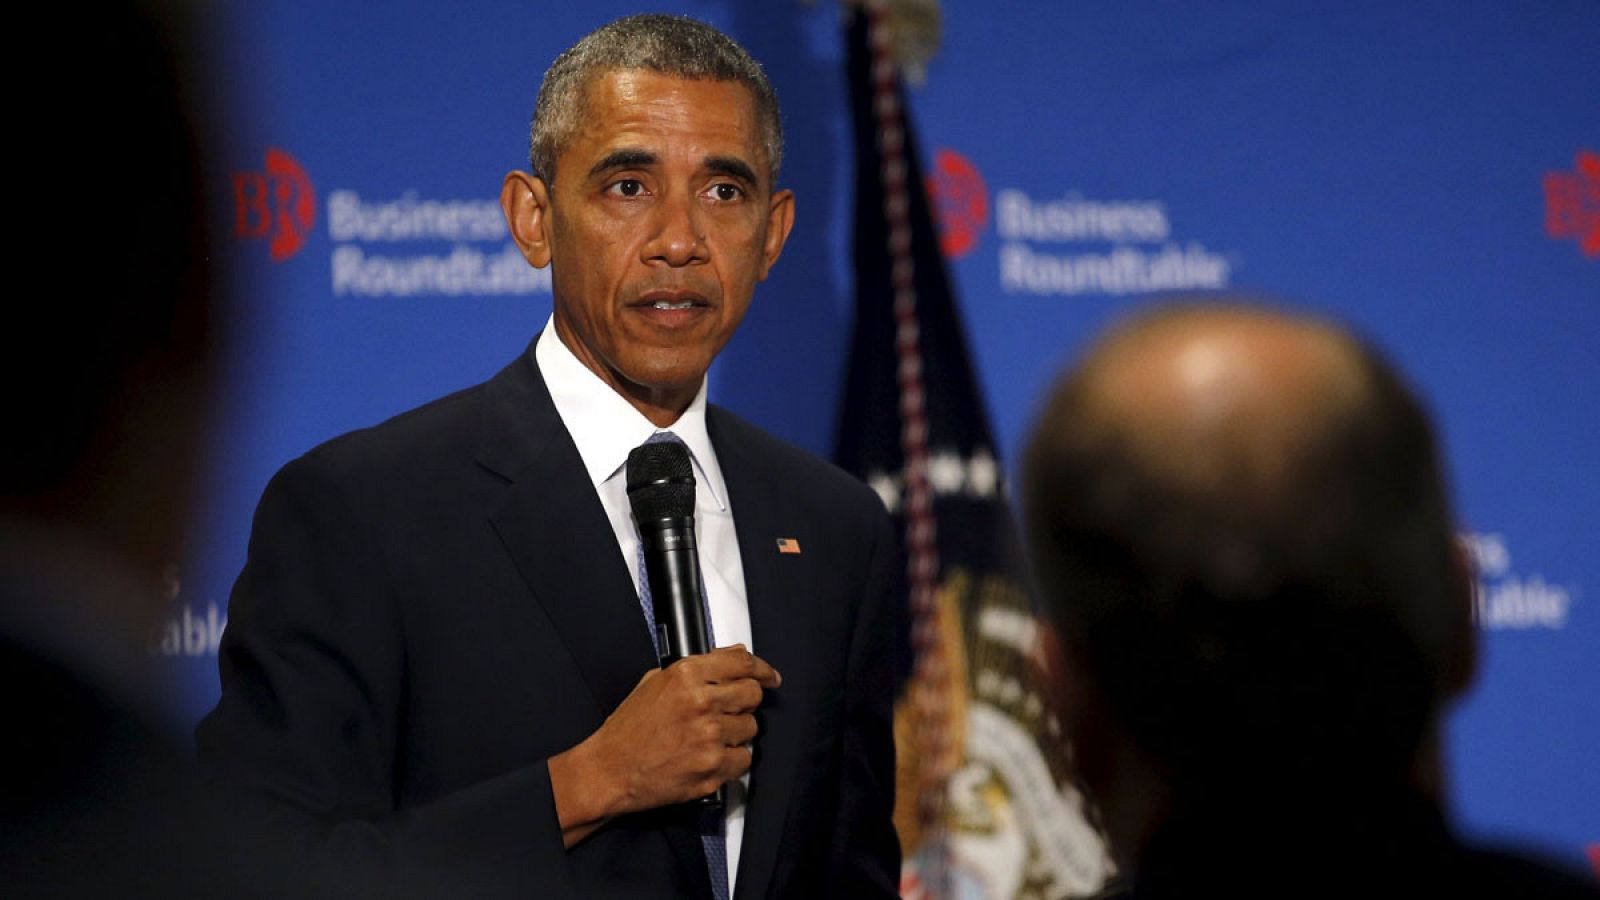 El presidente de EEUU Barack Obama interviene ante la Mesa Redonda de Negocios en Washington, este miércoles 16 de septiembre